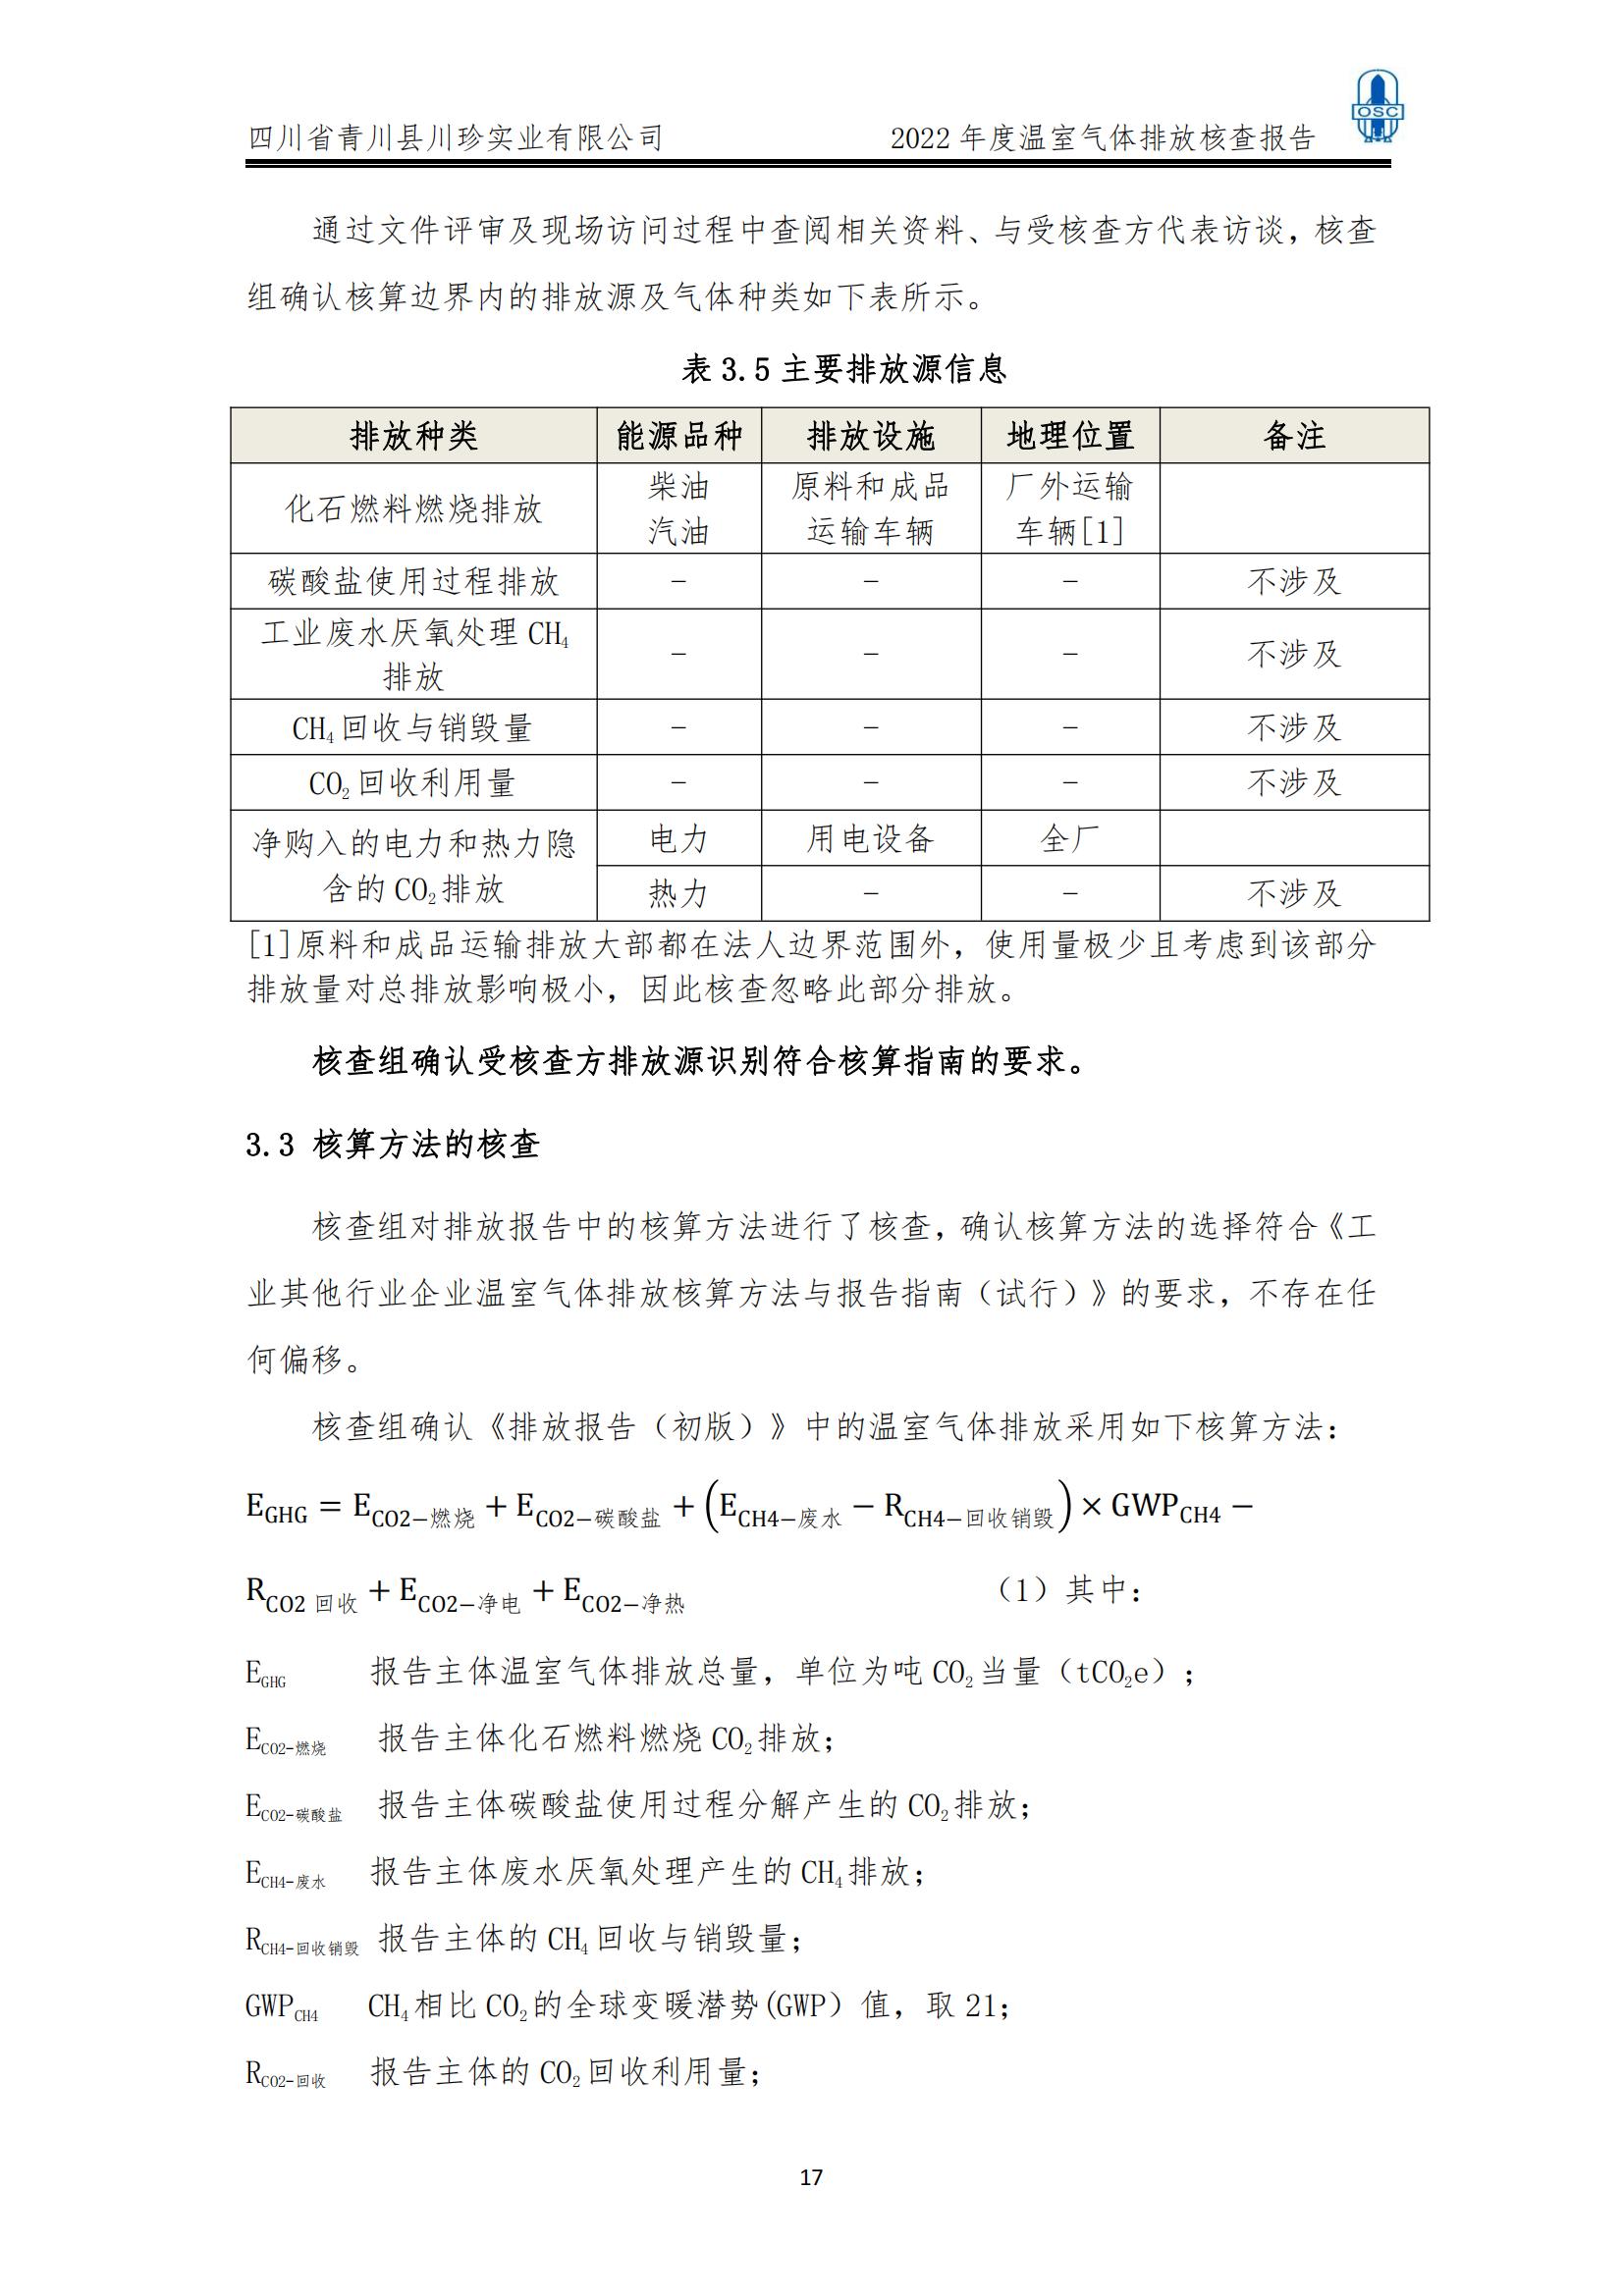 2022年度温室气体核查报告(四川省青川县川珍实业有限公司(图18)